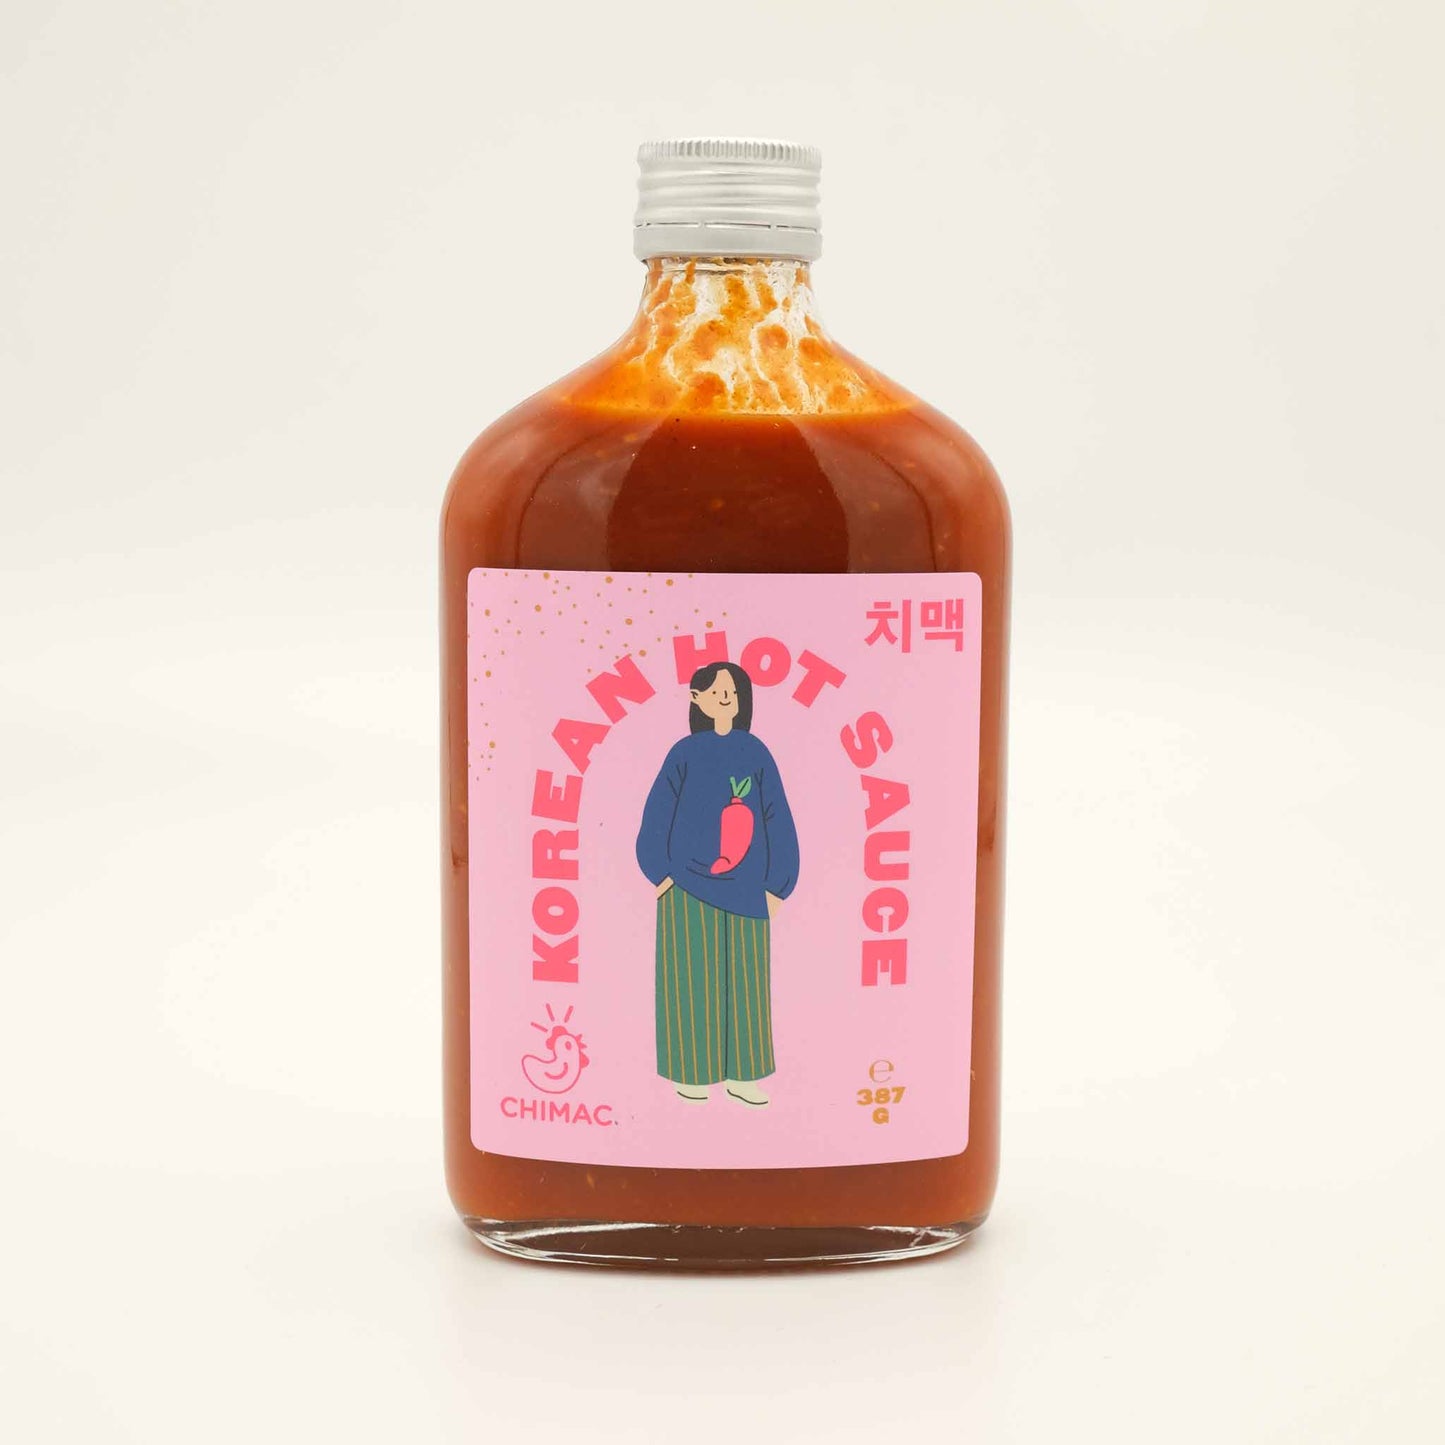 Chimac Korean Hot Sauce